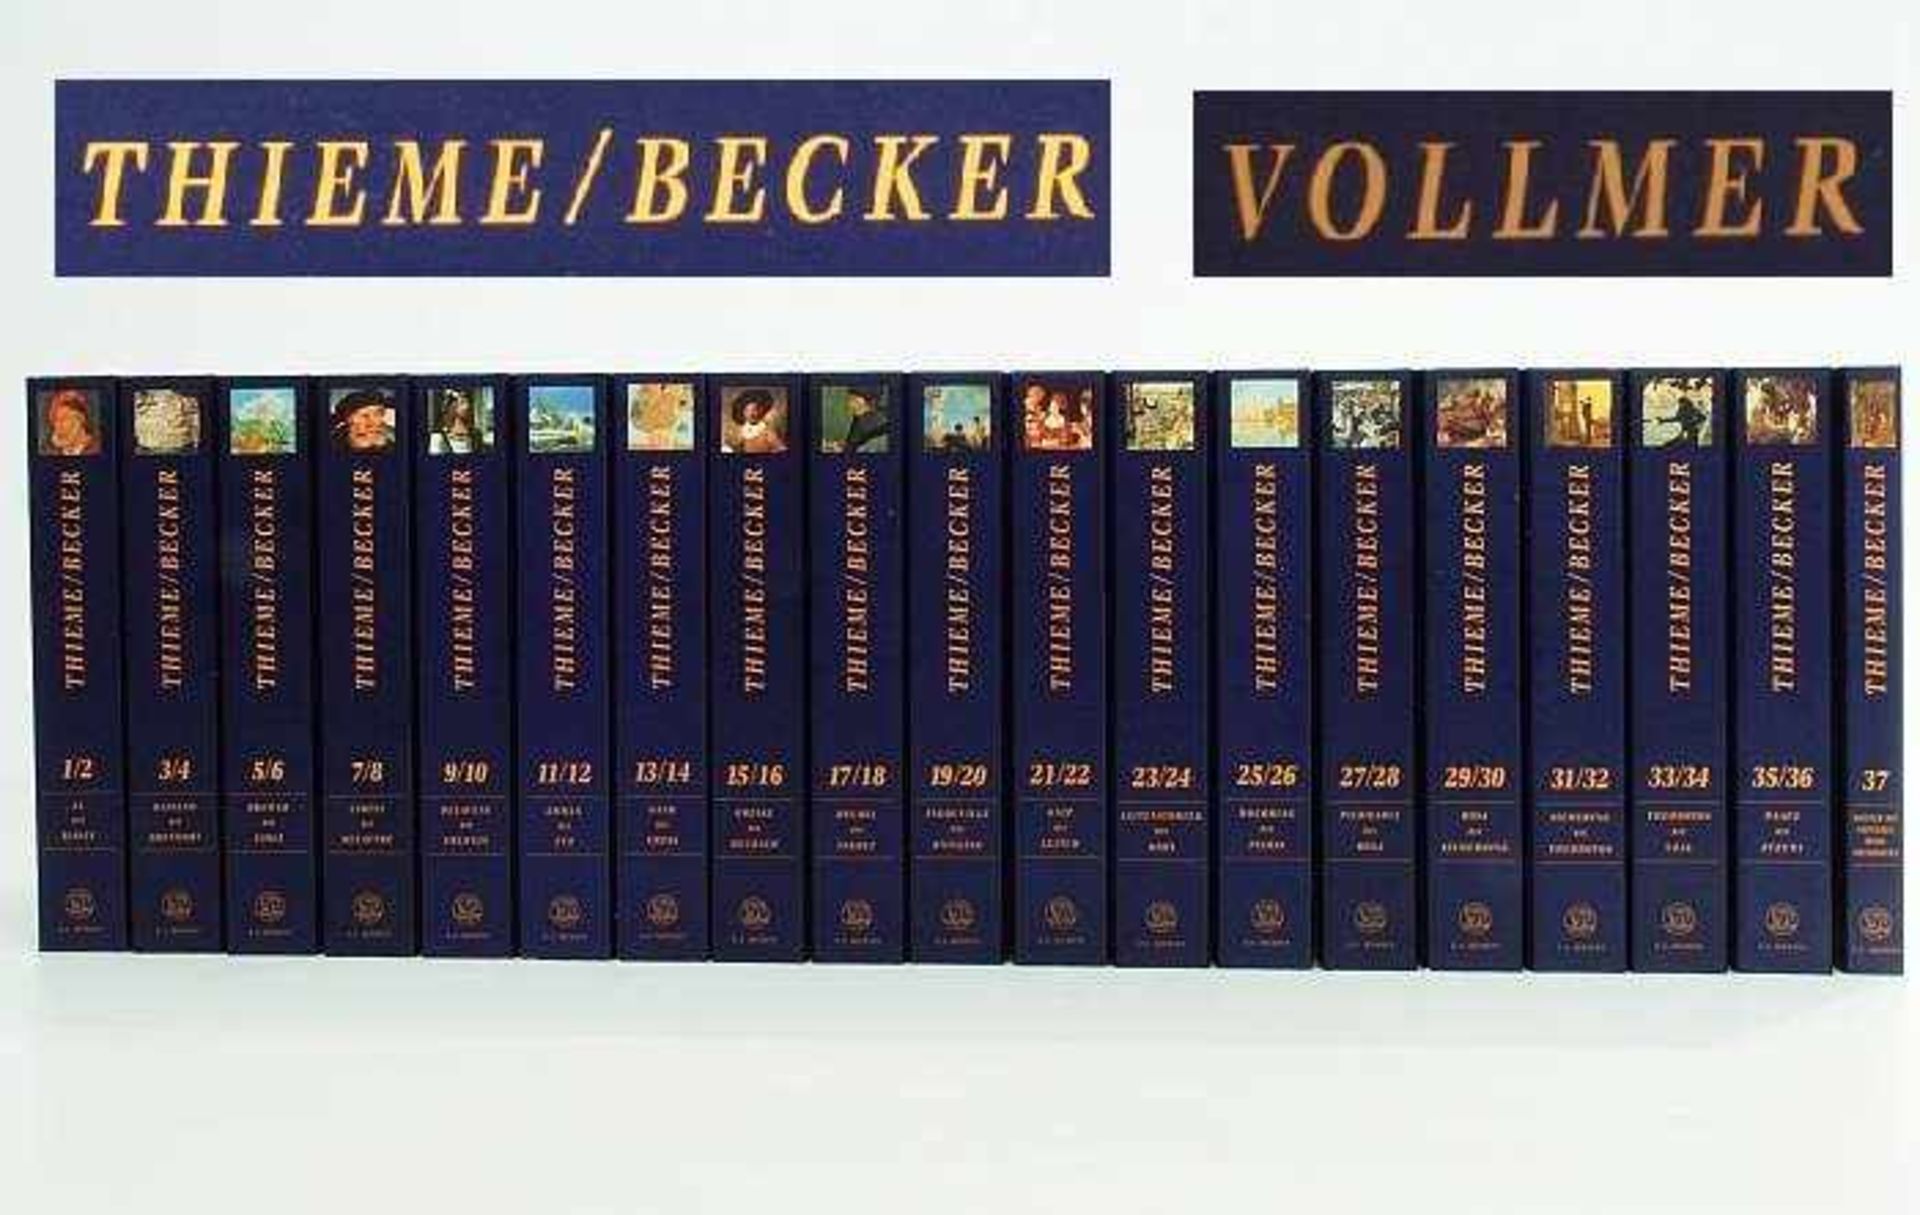 Künstlerlexikon Thieme/Becker und Vollmer Künstlerlexikon Thieme/Becker und Vollmer. SEEMANN